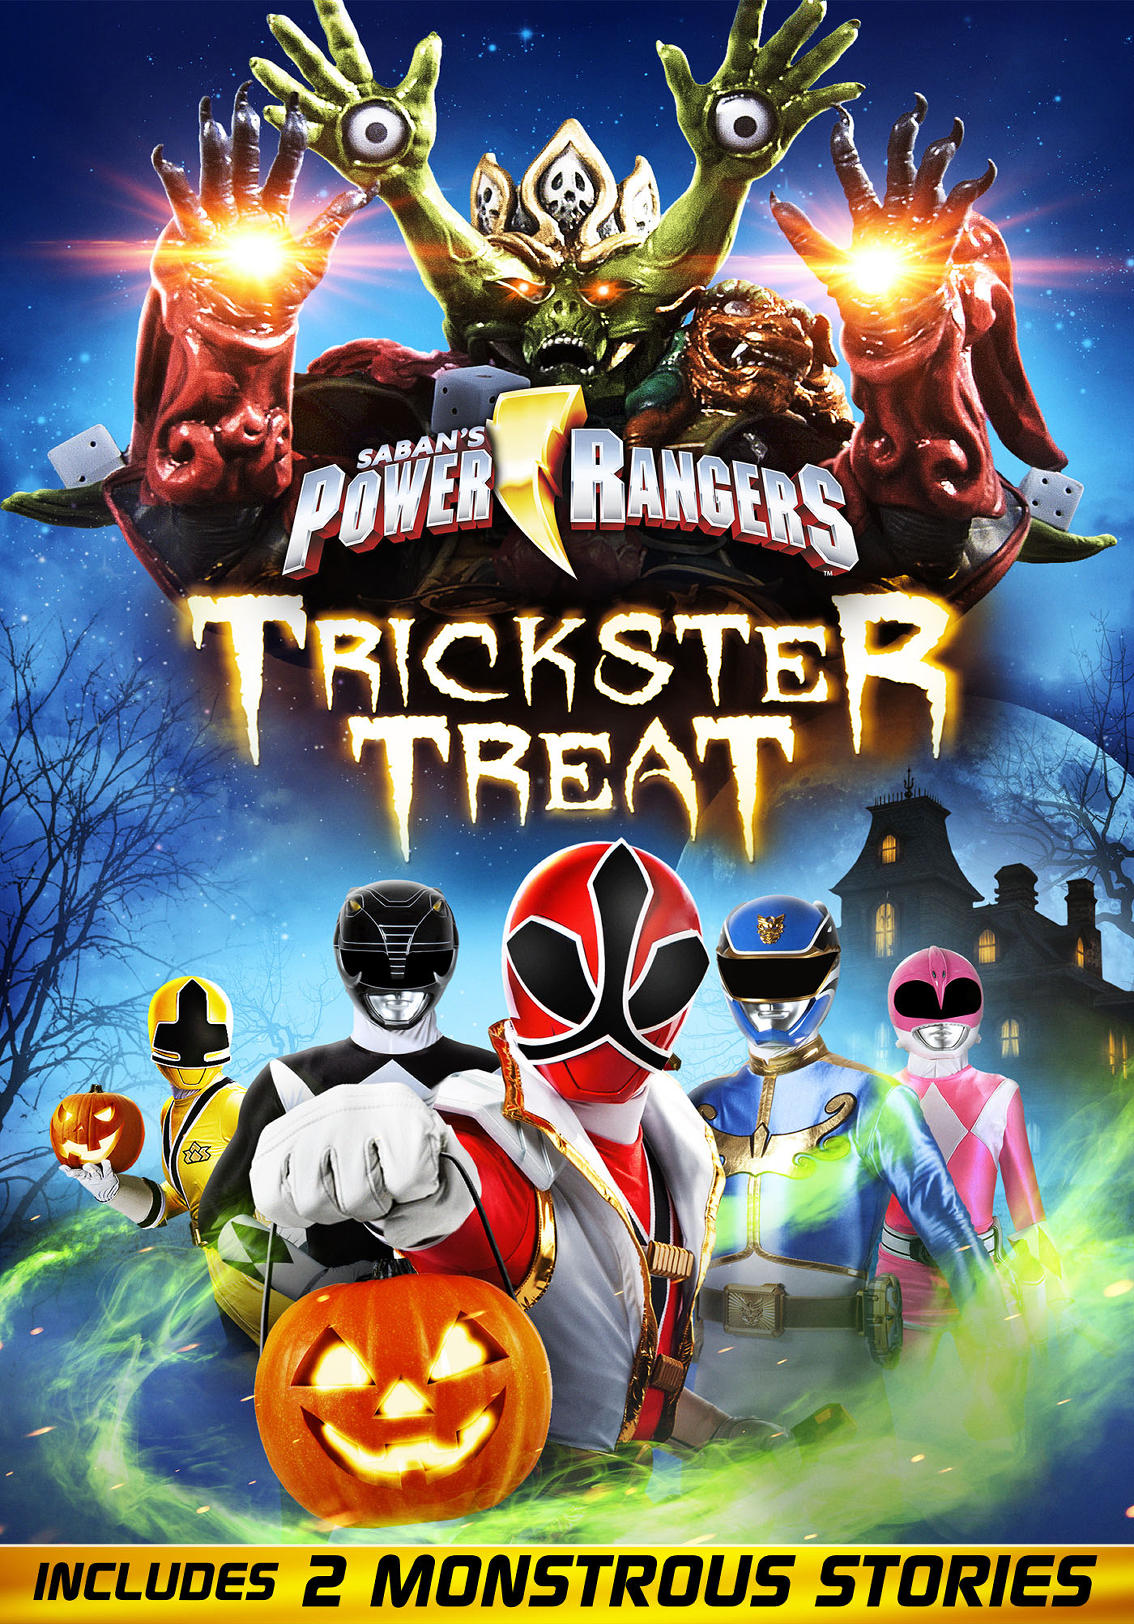 Power Rangers: Trickster Treat.